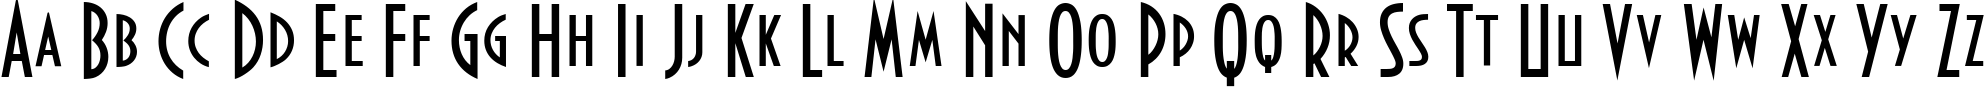 Пример написания английского алфавита шрифтом Bankir-Retro